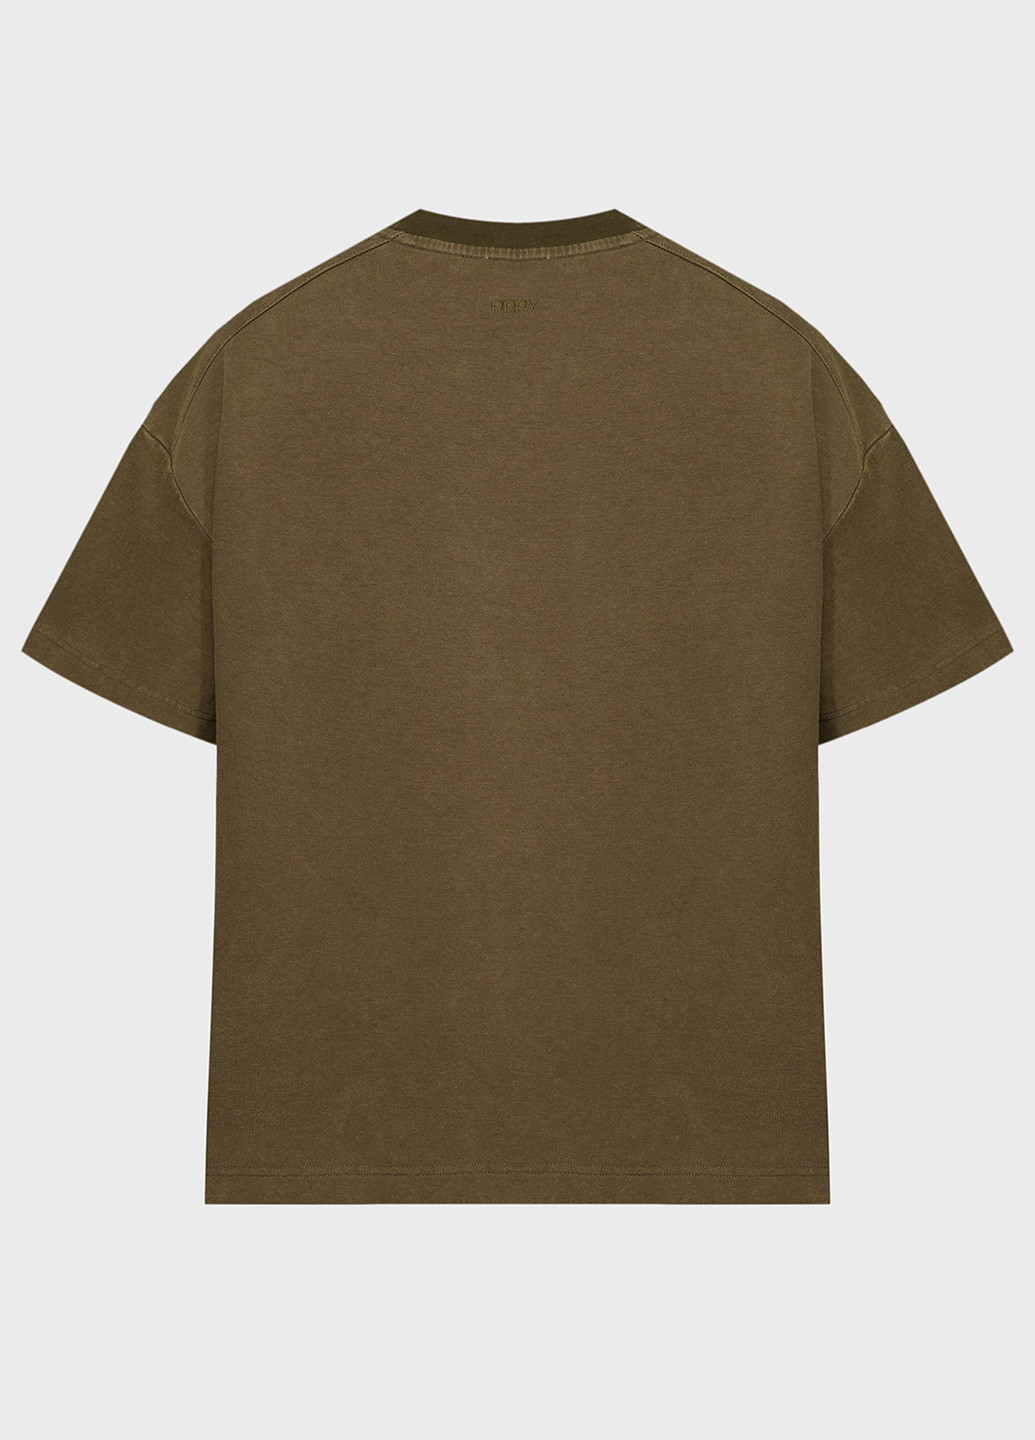 Хаки (оливковая) футболка PRPY